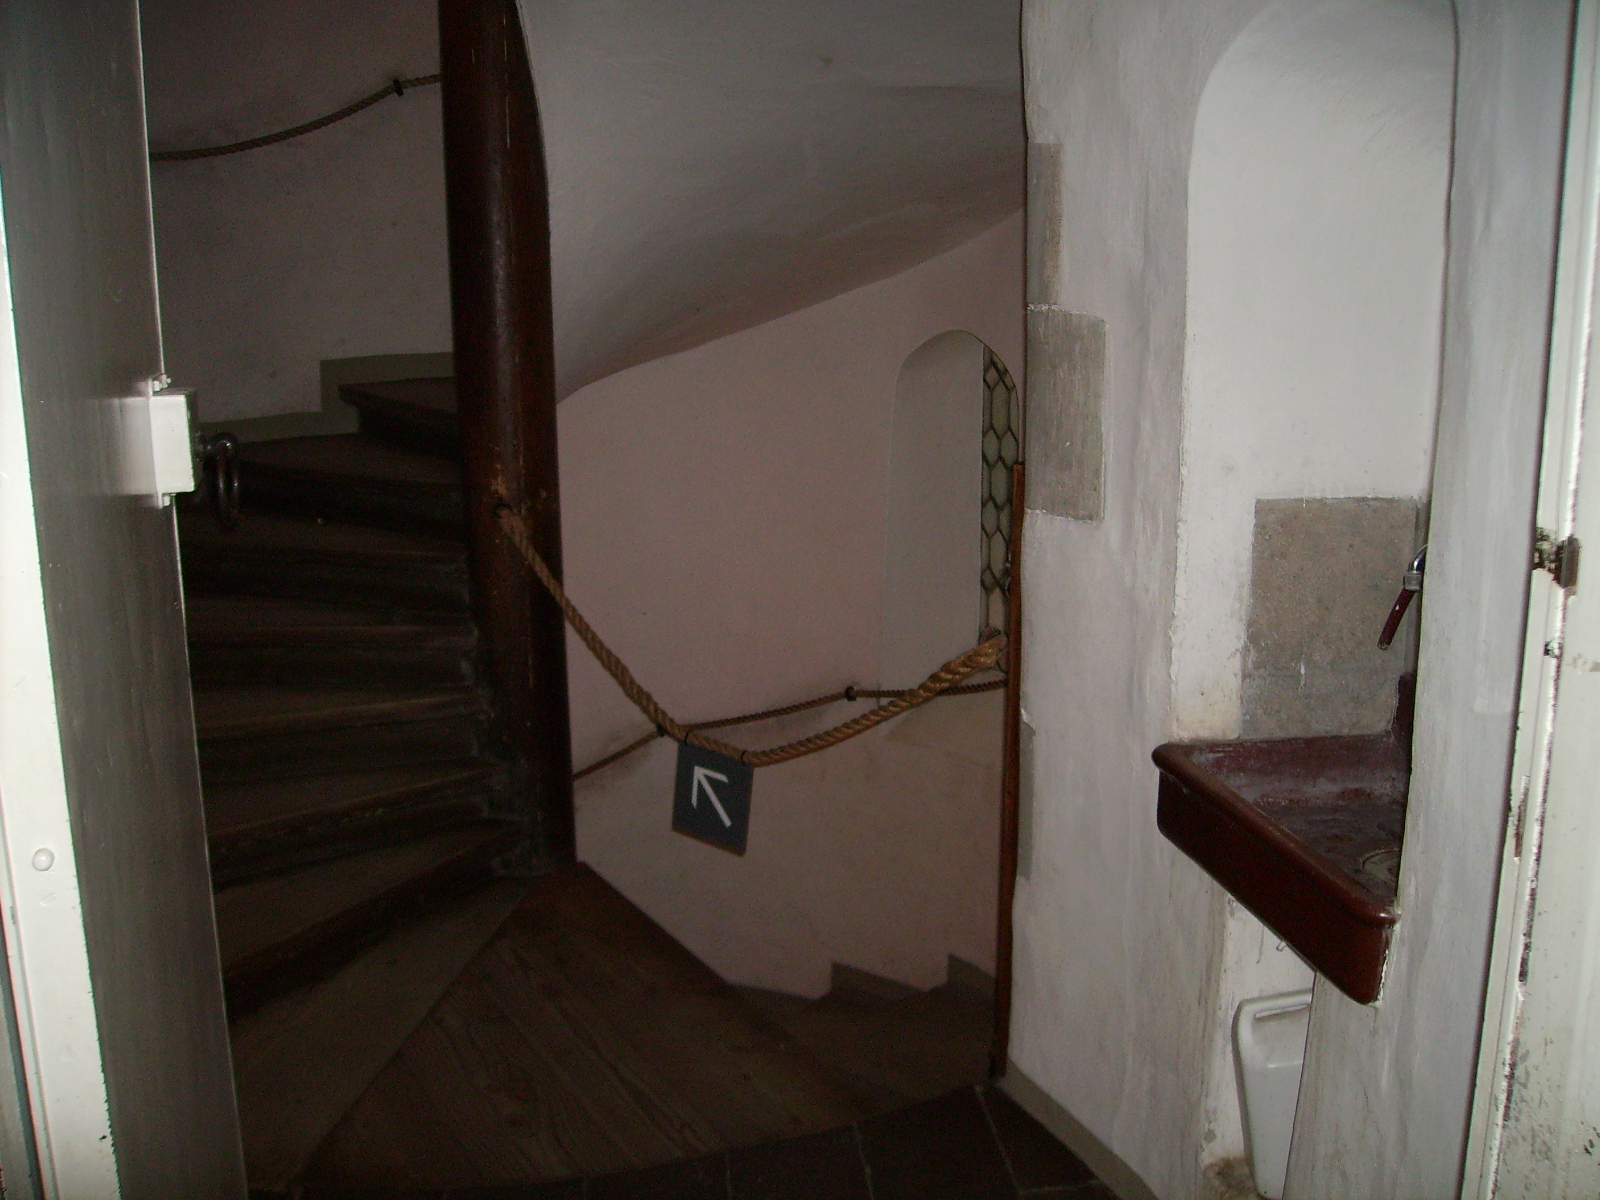 Många trappor. Här kunde någon lätt tappat bort sig. Fast kanske ännu hellre i katakomberna, där är det becksvart.